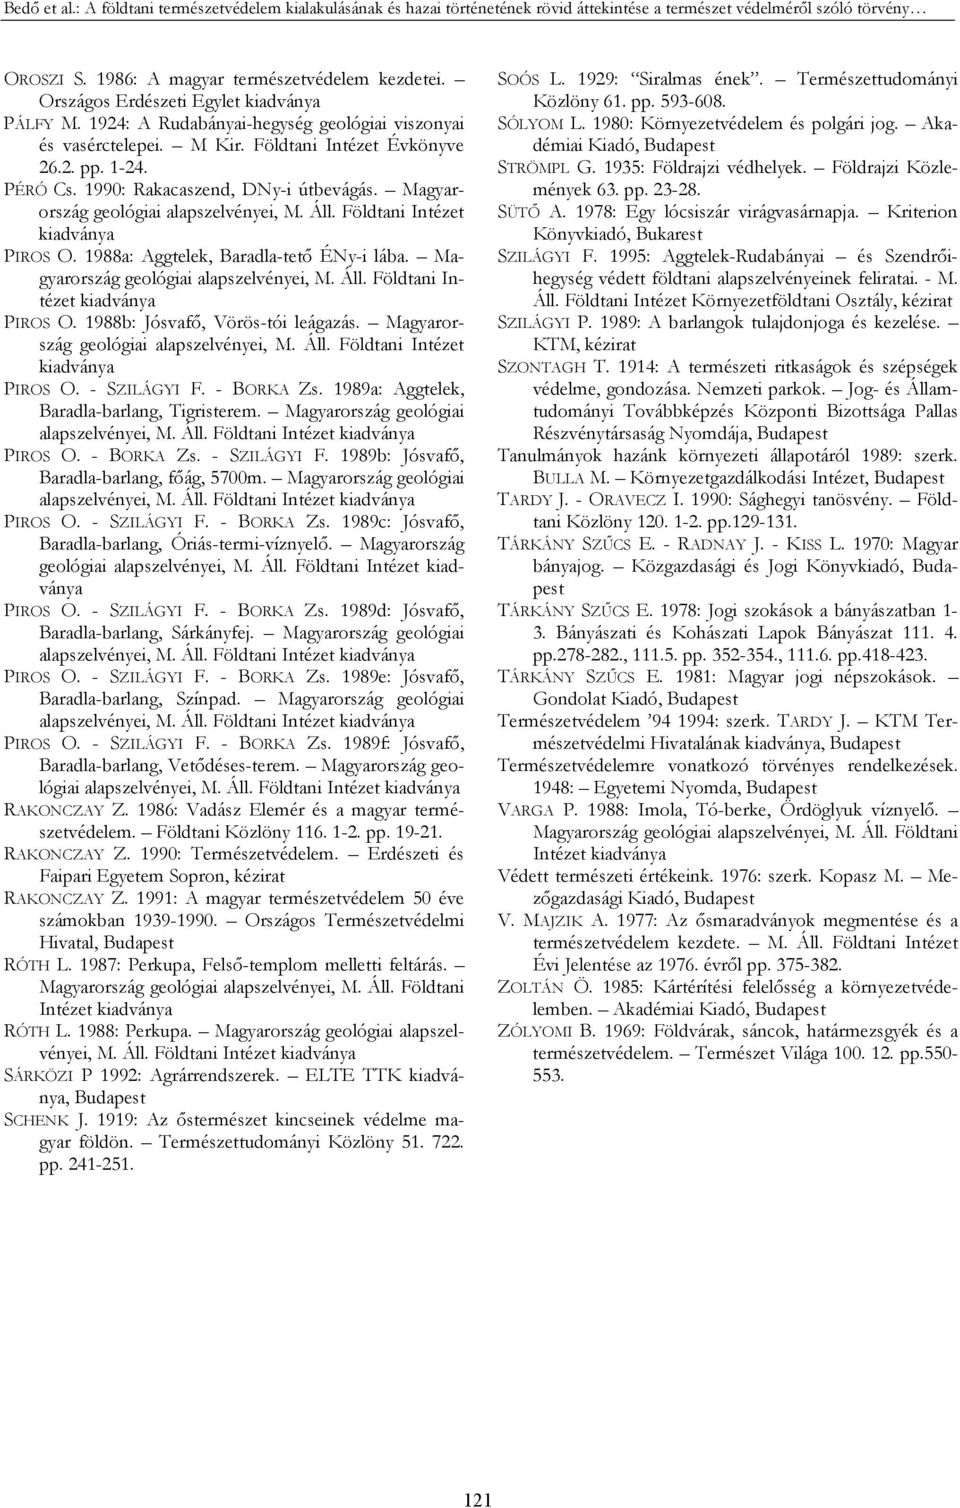 1990: Rakacaszend, DNy-i útbevágás. Magyarország geológiai alapszelvényei, M. Áll. Földtani Intézet kiadványa PIROS O. 1988a: Aggtelek, Baradla-tető ÉNy-i lába.